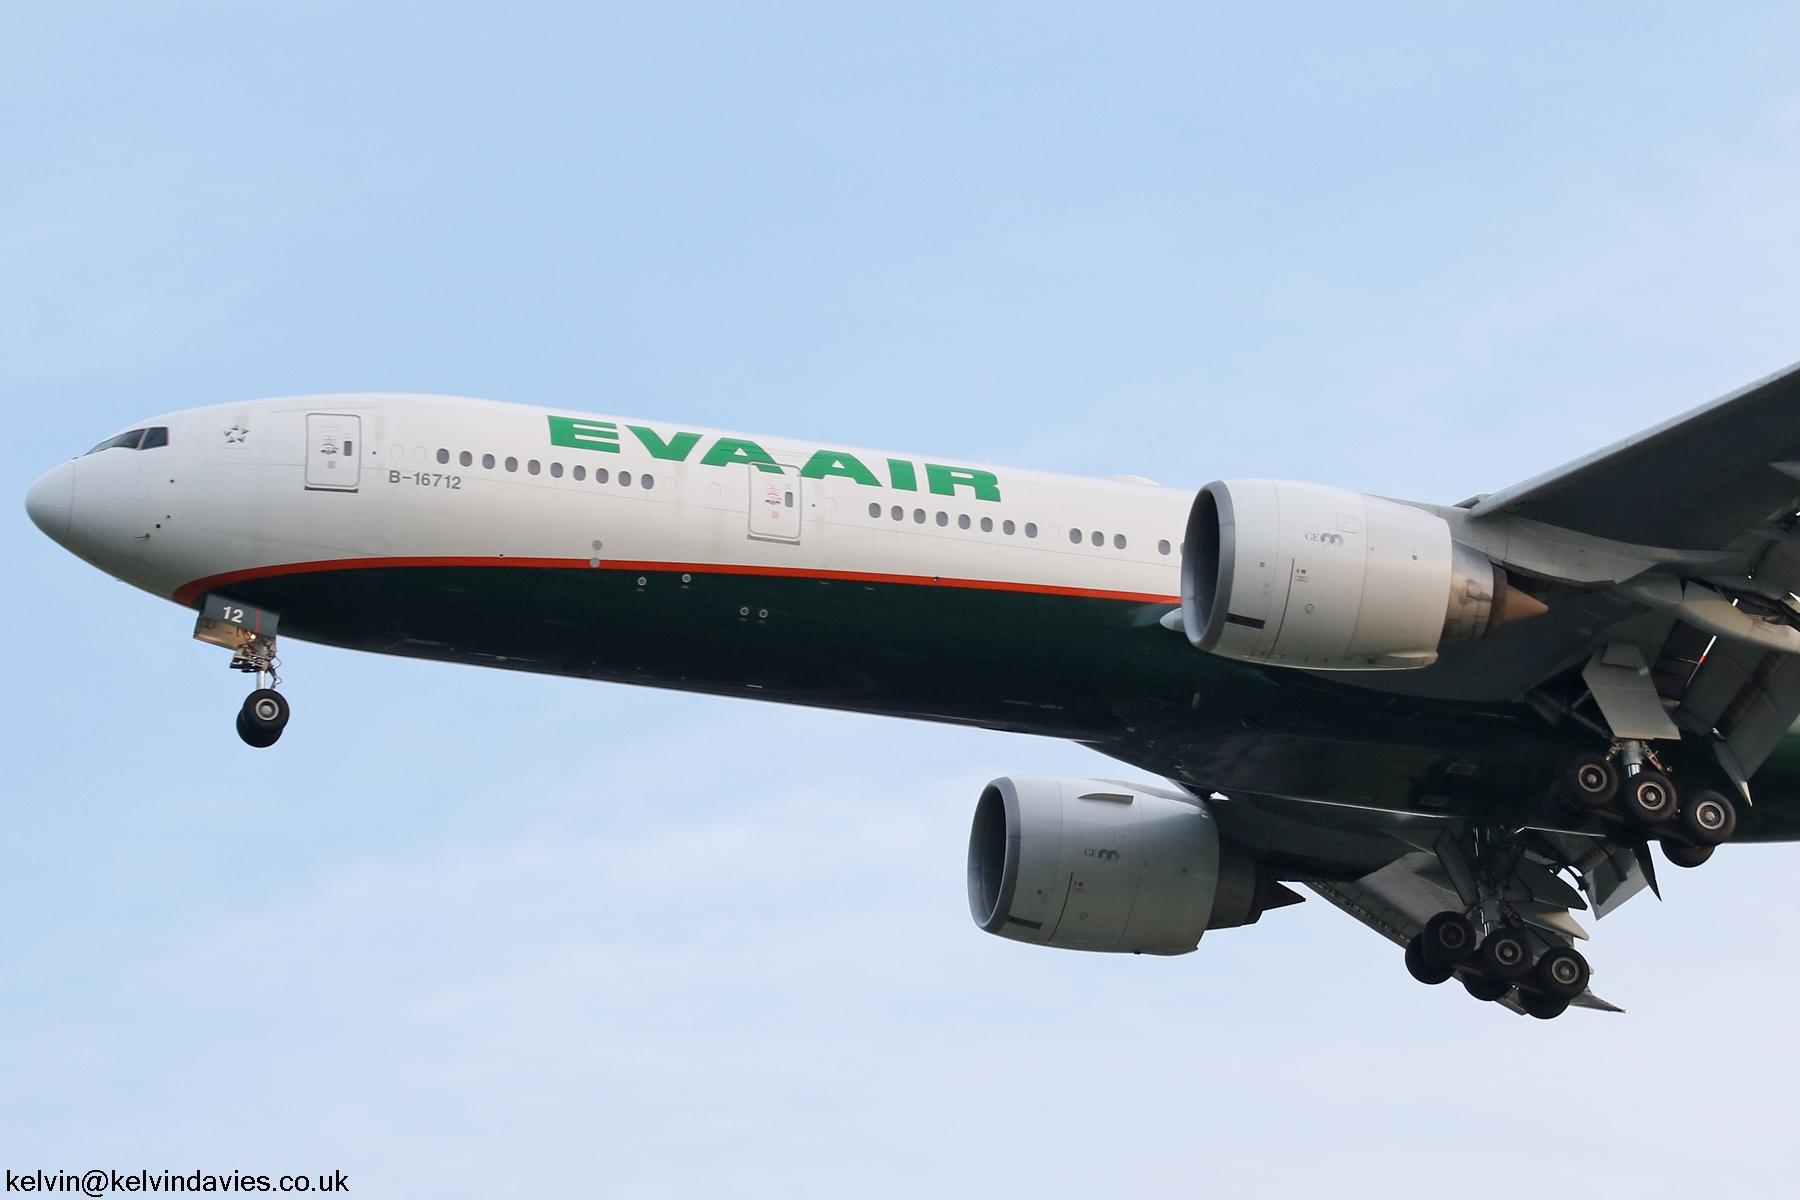 EVA Air 777 B-16712